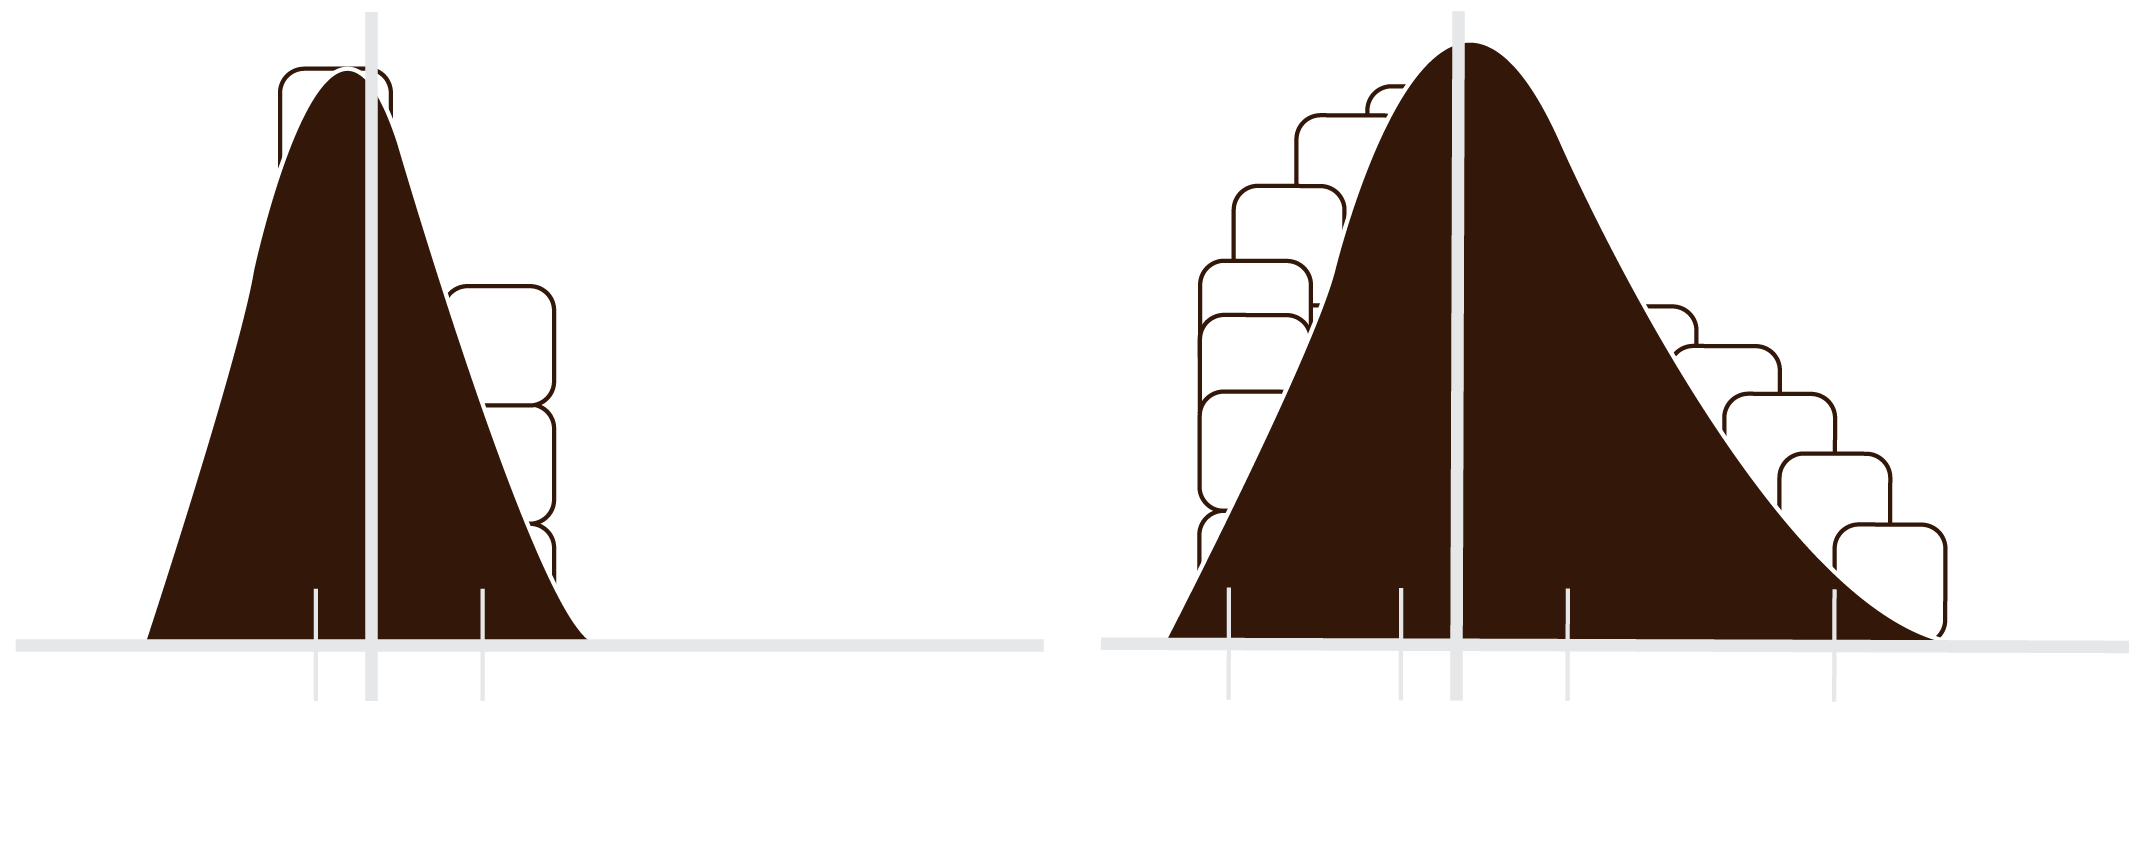 Dos gráficos que presentan una campana de Gauss, en uno los datos están cercanos a la media por ende con baja dispersión, en el otro están muy alejados de la media estos son datos con alta dispersión